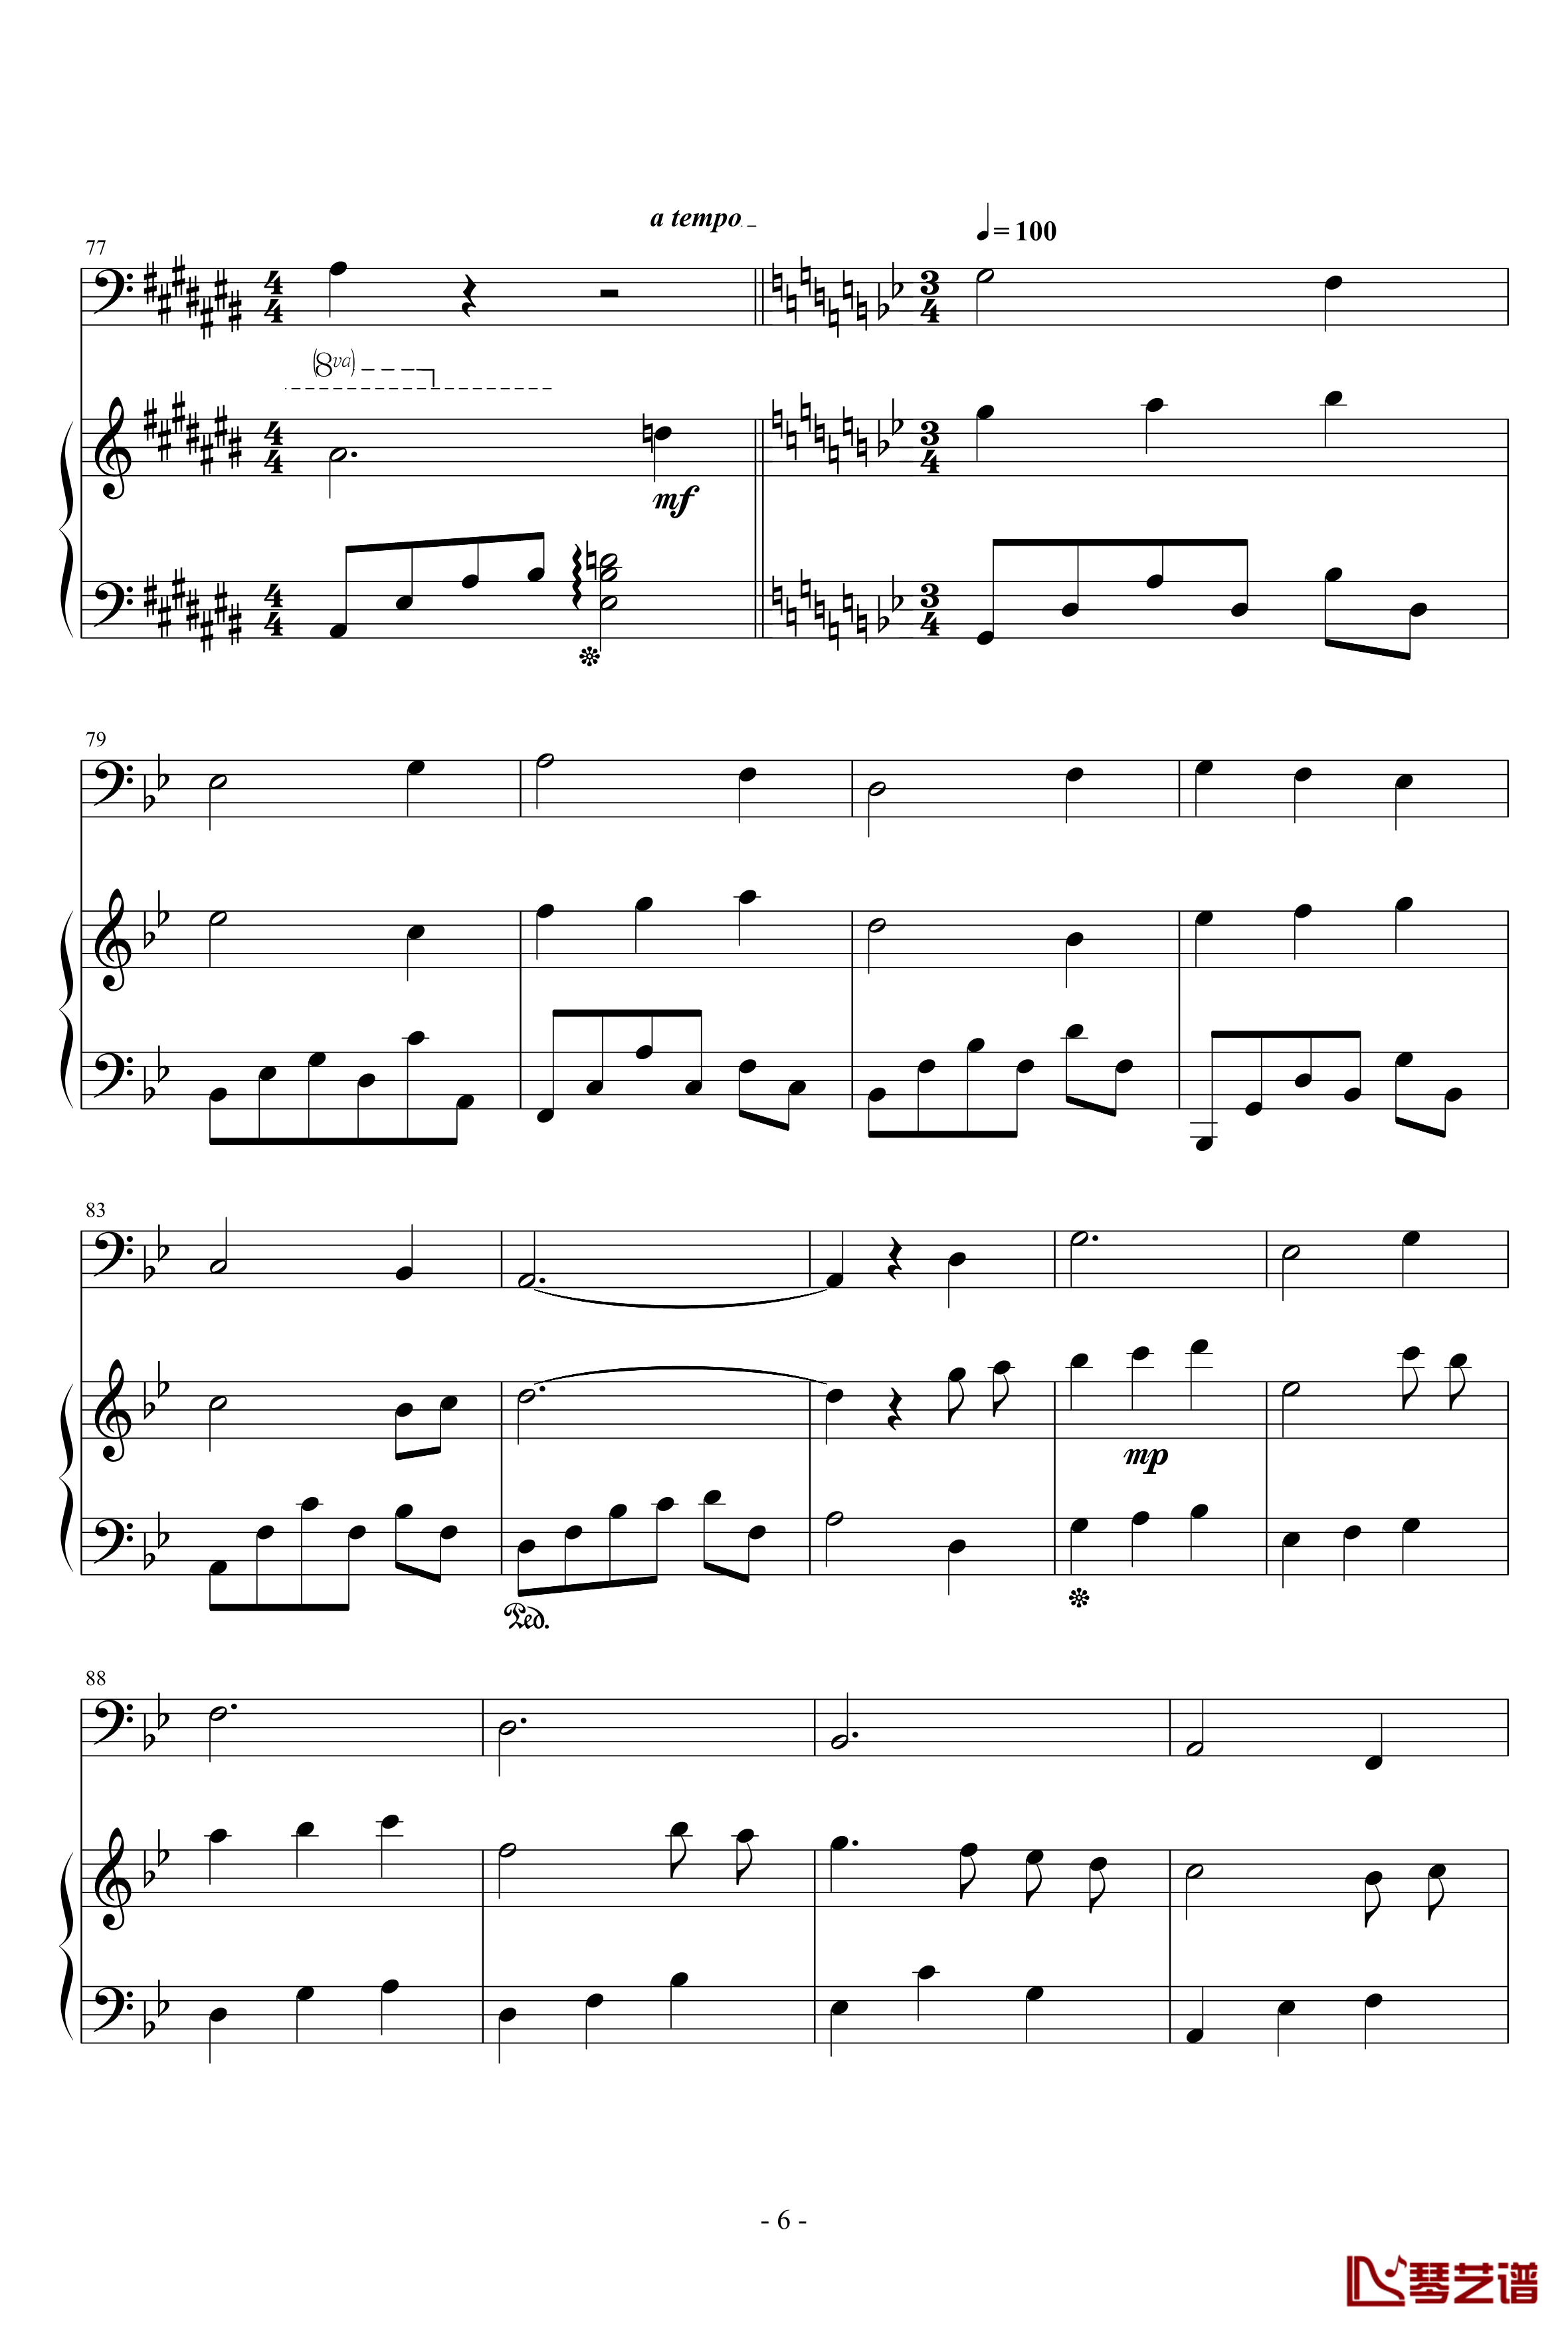 弦乐协奏曲A钢琴谱-天籁传声6